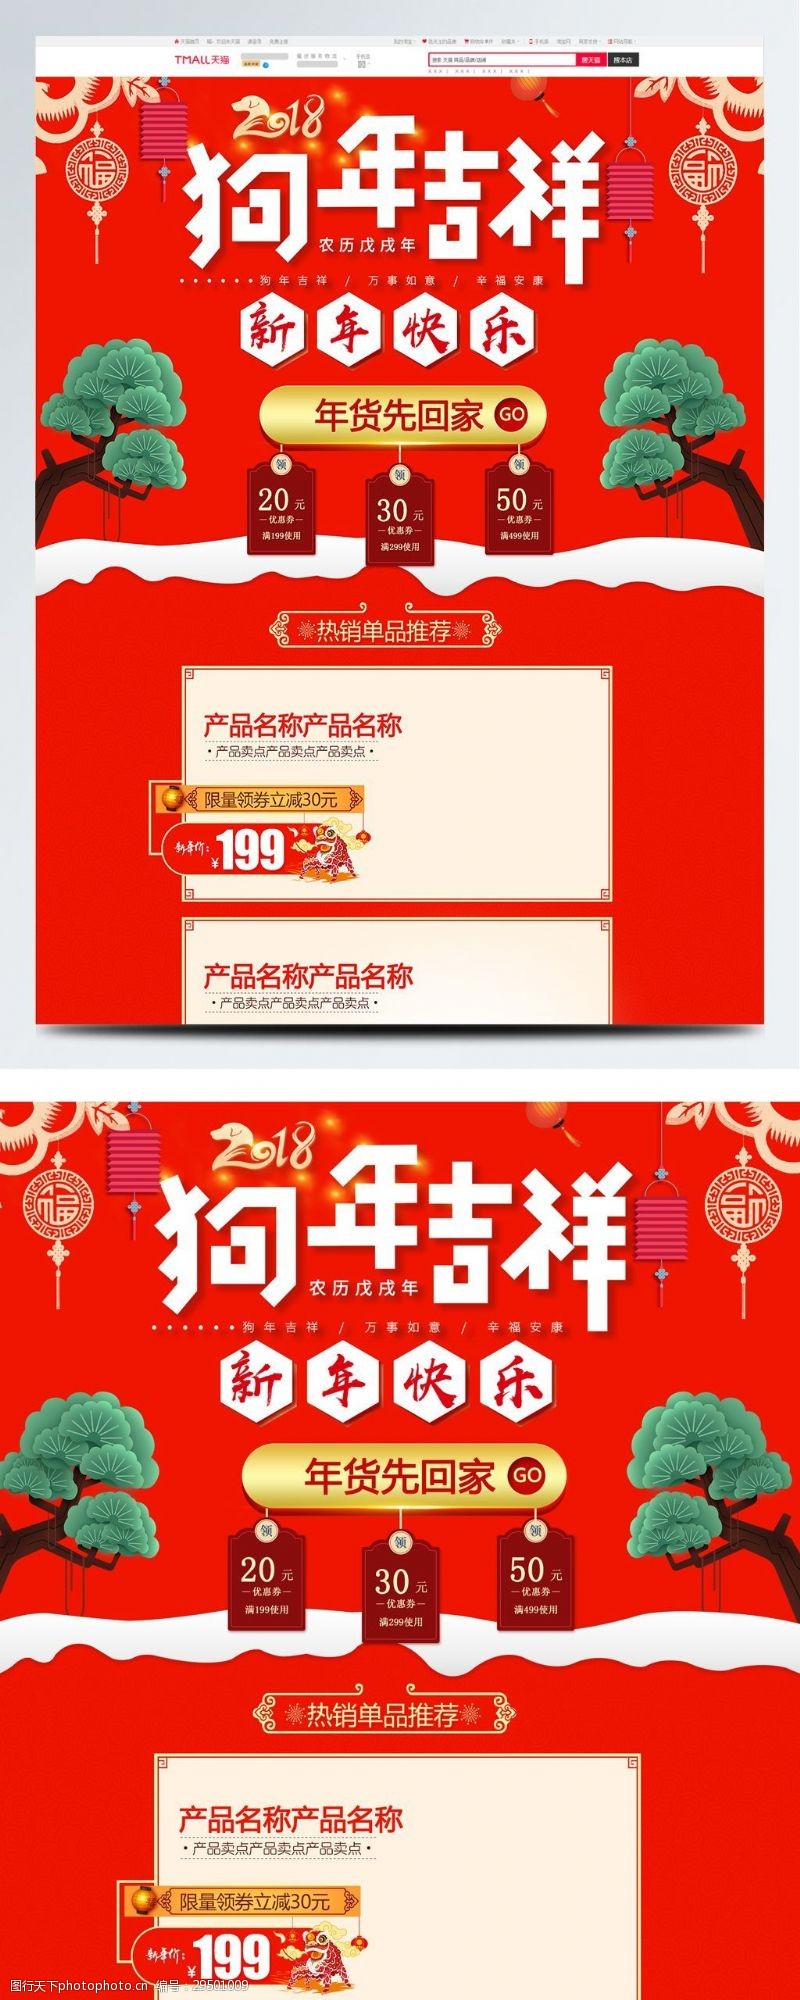 纸灯笼2018天猫淘宝年货节电商促销首页模板